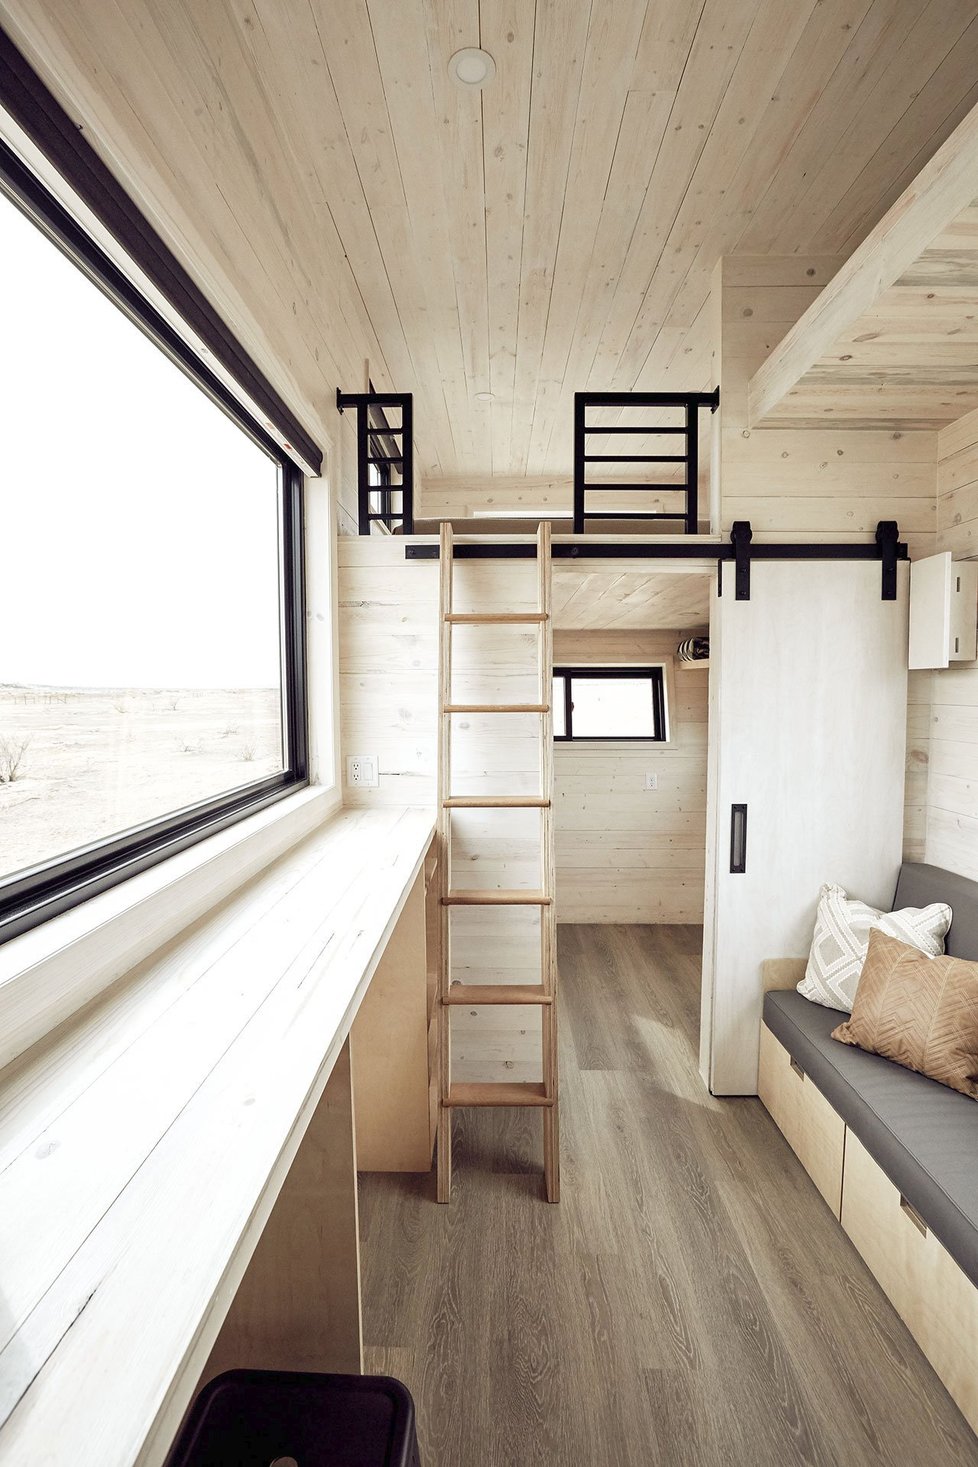 Designový karavan nabízí pohodlné bydlení pro 4 až 6 osob